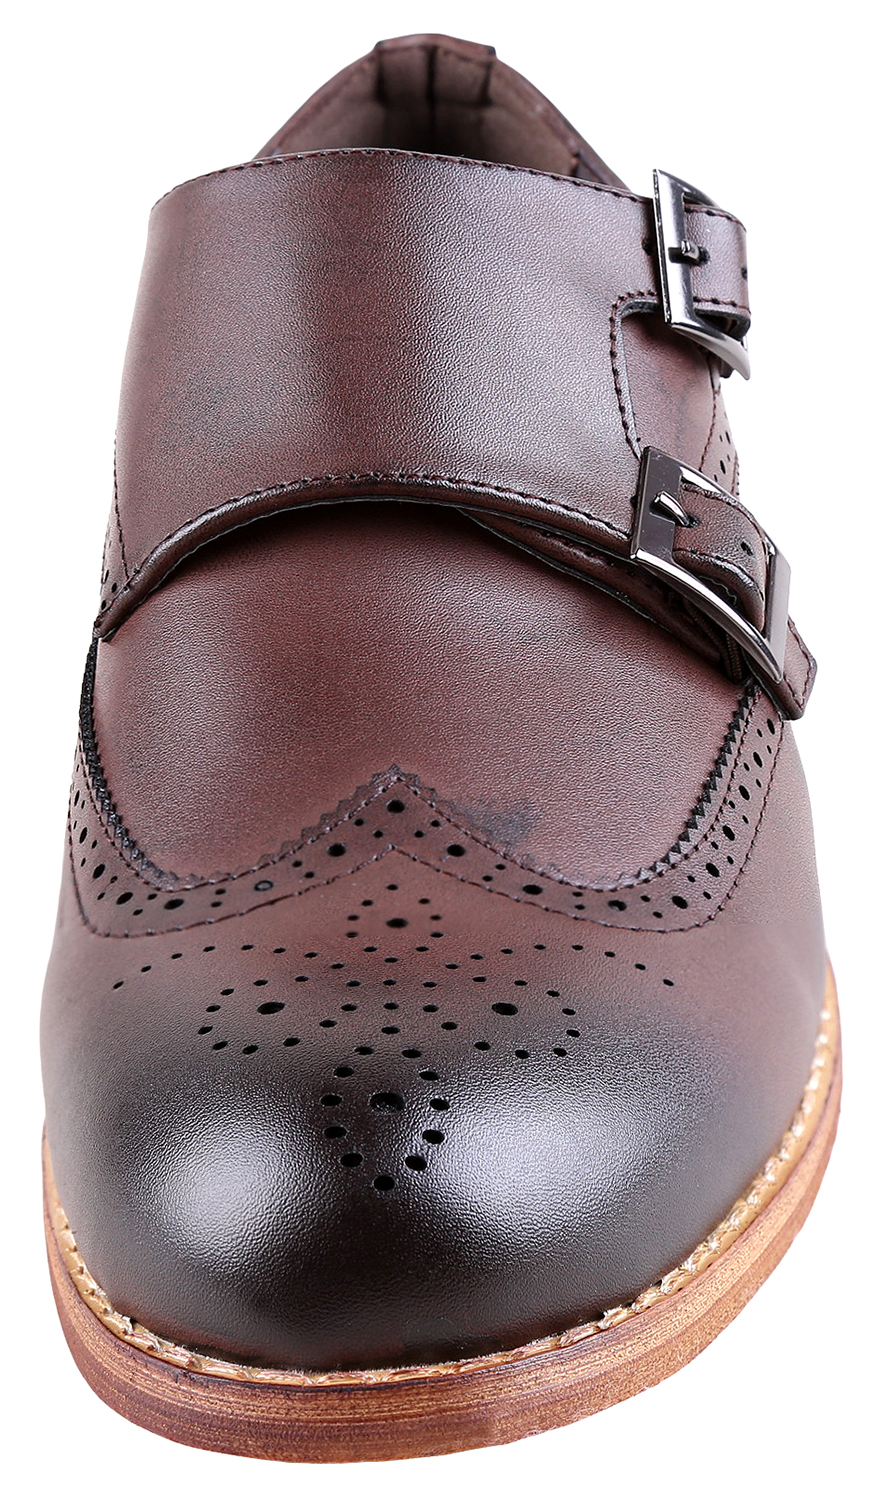 Urban Fox Allen Men's Dress Shoe | Double Monk Strap | Brogue | Wingtip Shoes for Men | Dark Brown 9 M US - image 3 of 7